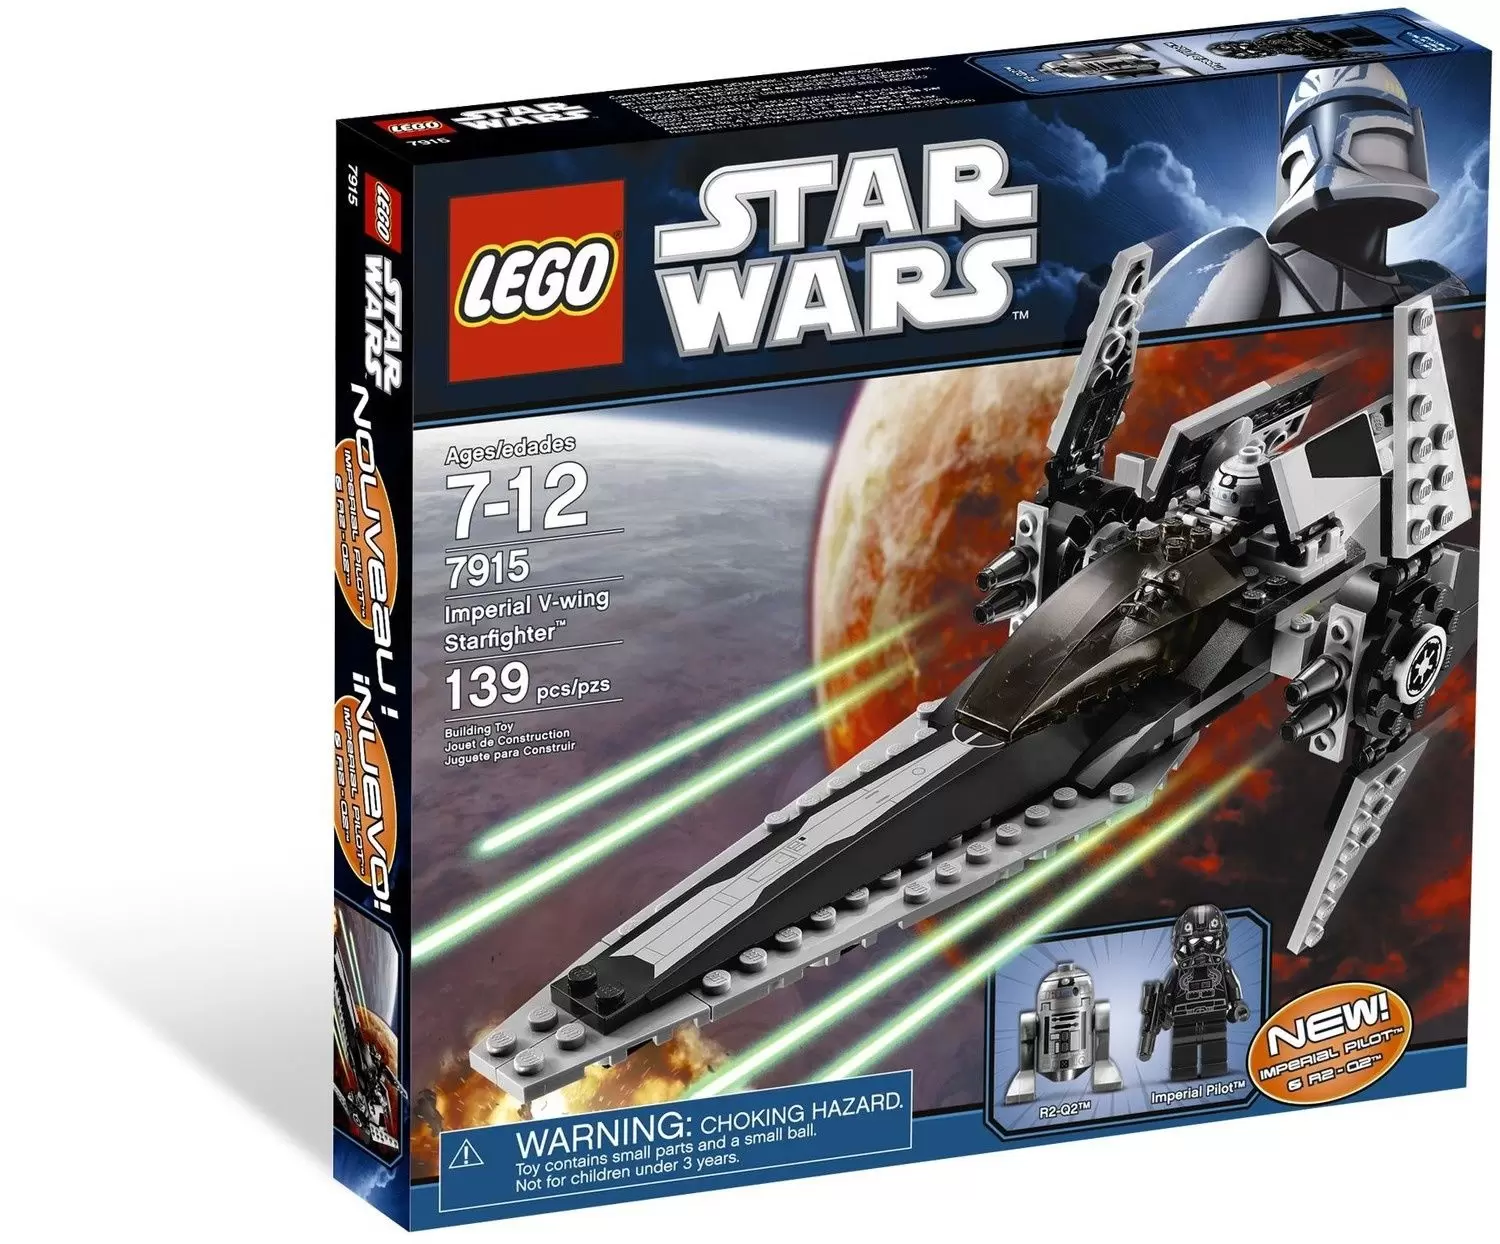 LEGO Star Wars - Imperial V-wing Starfighter